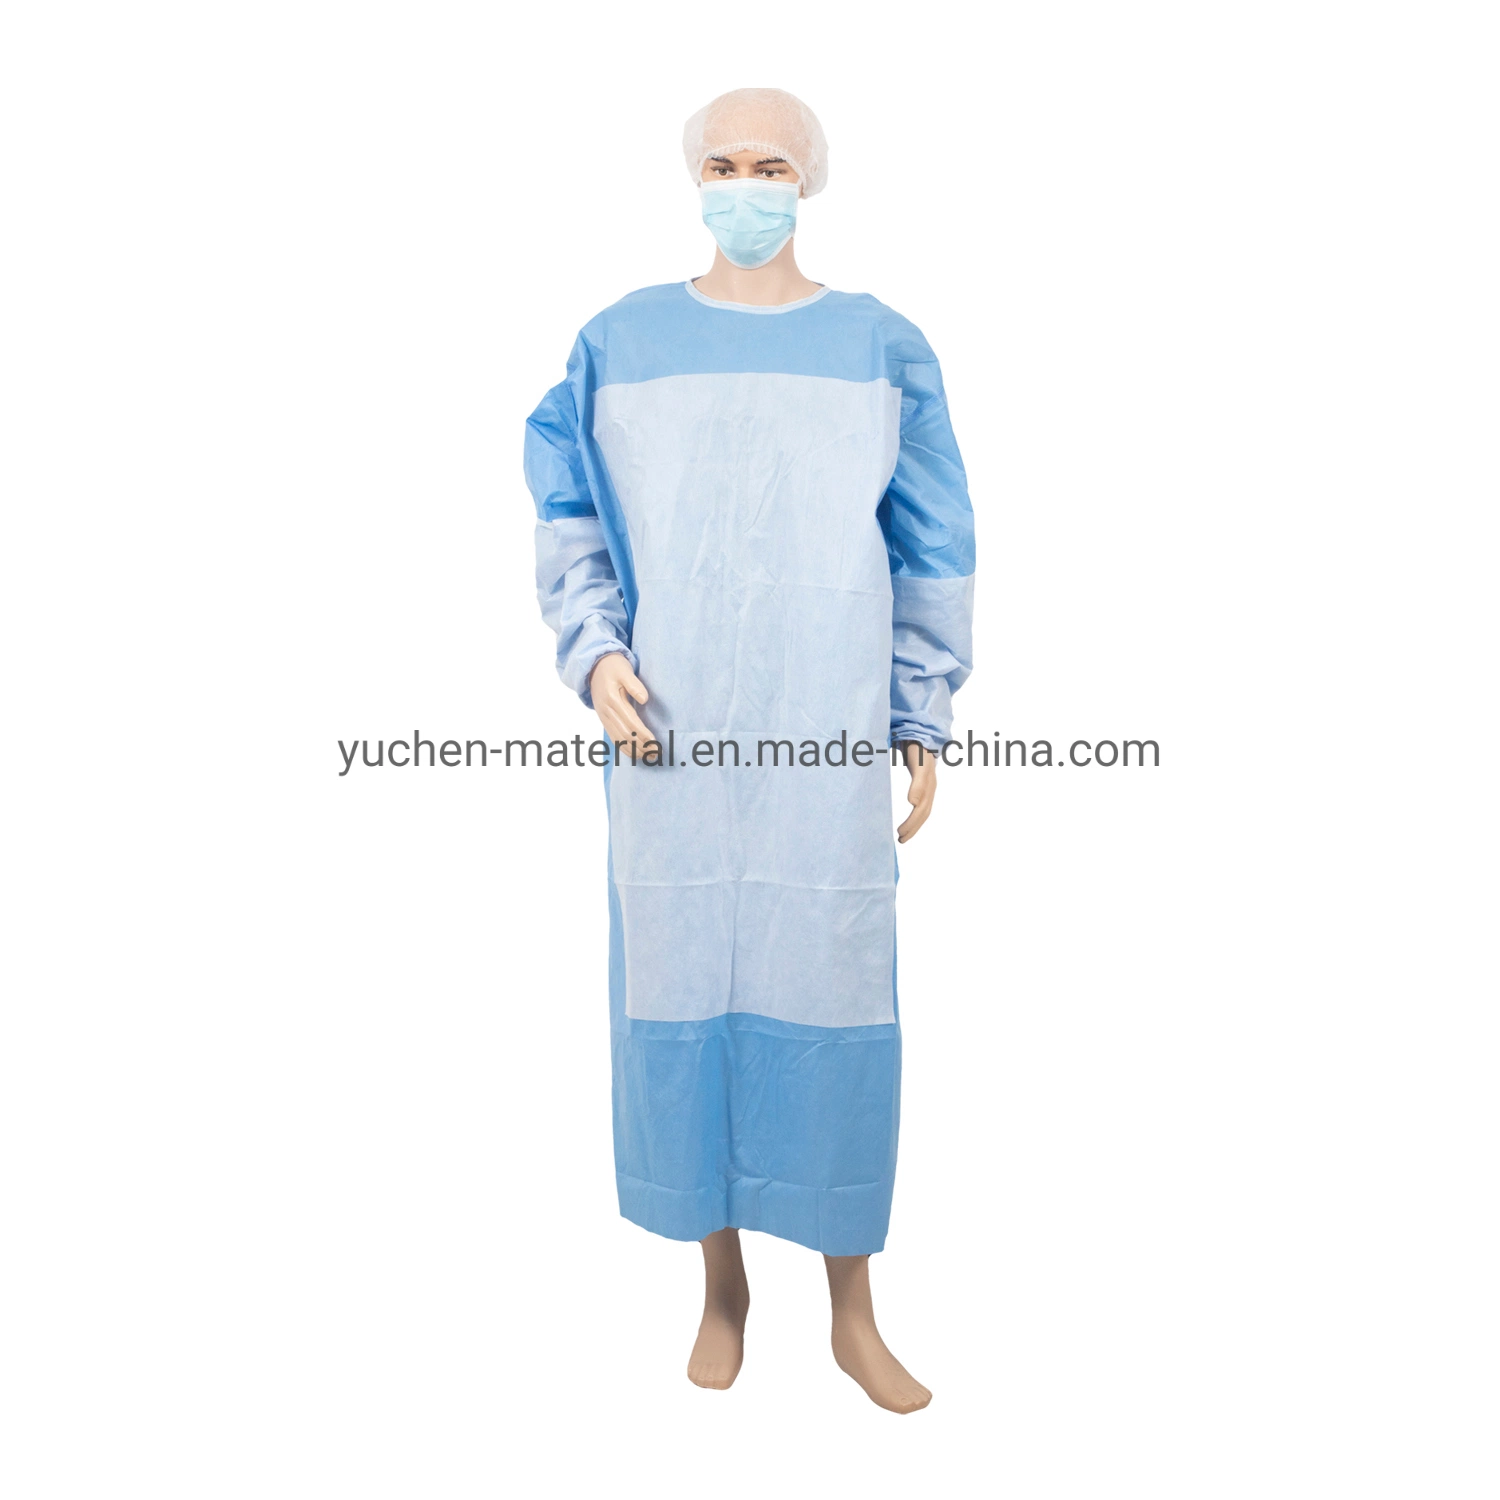 Одноразовые медицинские халаты стандарта Gown и усиленные хирургические халаты SMMS 45GSM